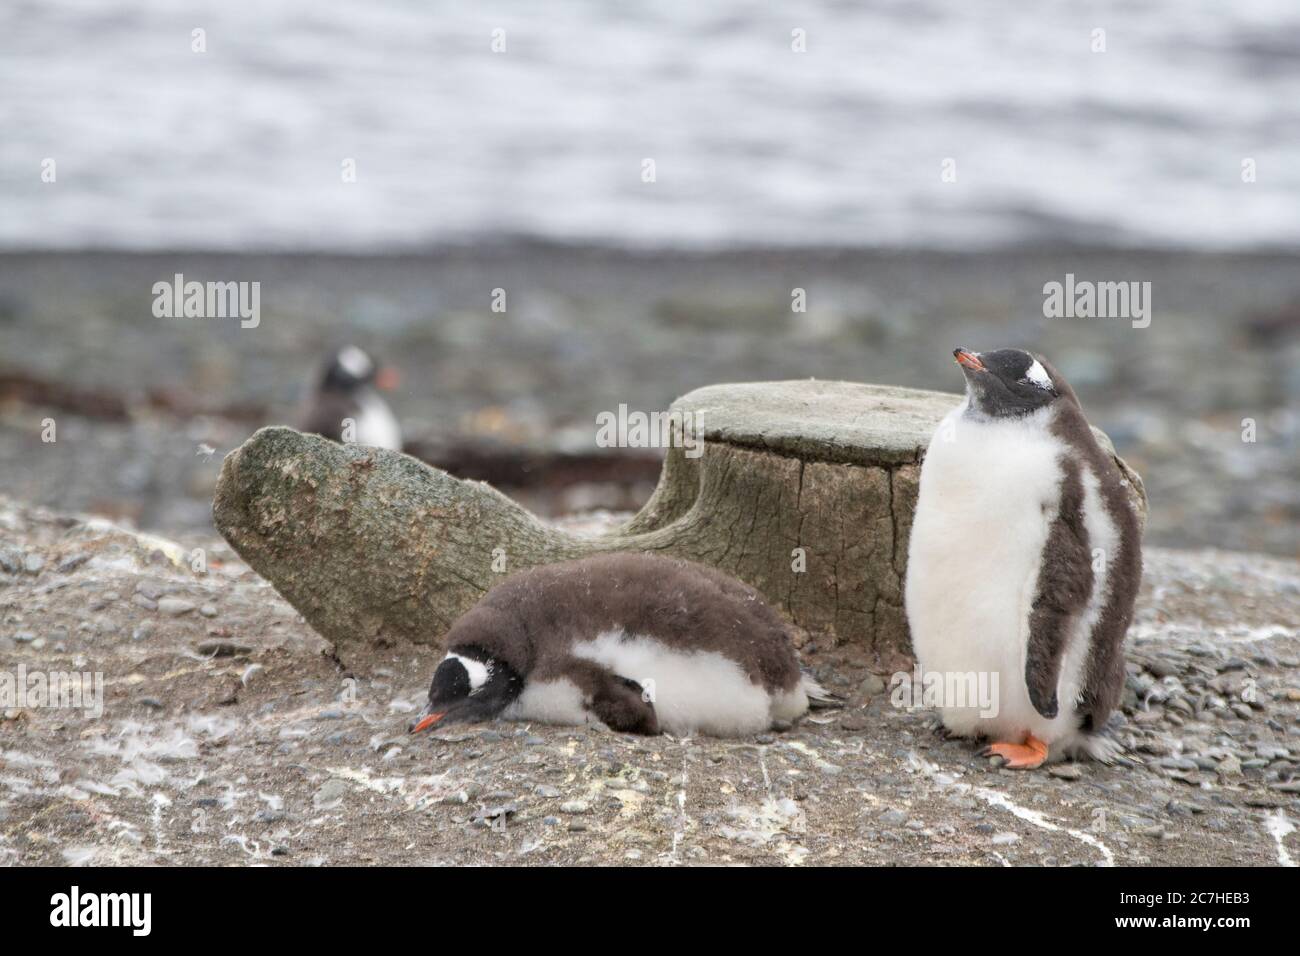 Pulcini pinguini gentoo in fuga; piume di chich in rovina; addormentato in attesa che i genitori portino cibo; nidificazione contro una vertebra balena; striature di guano Foto Stock